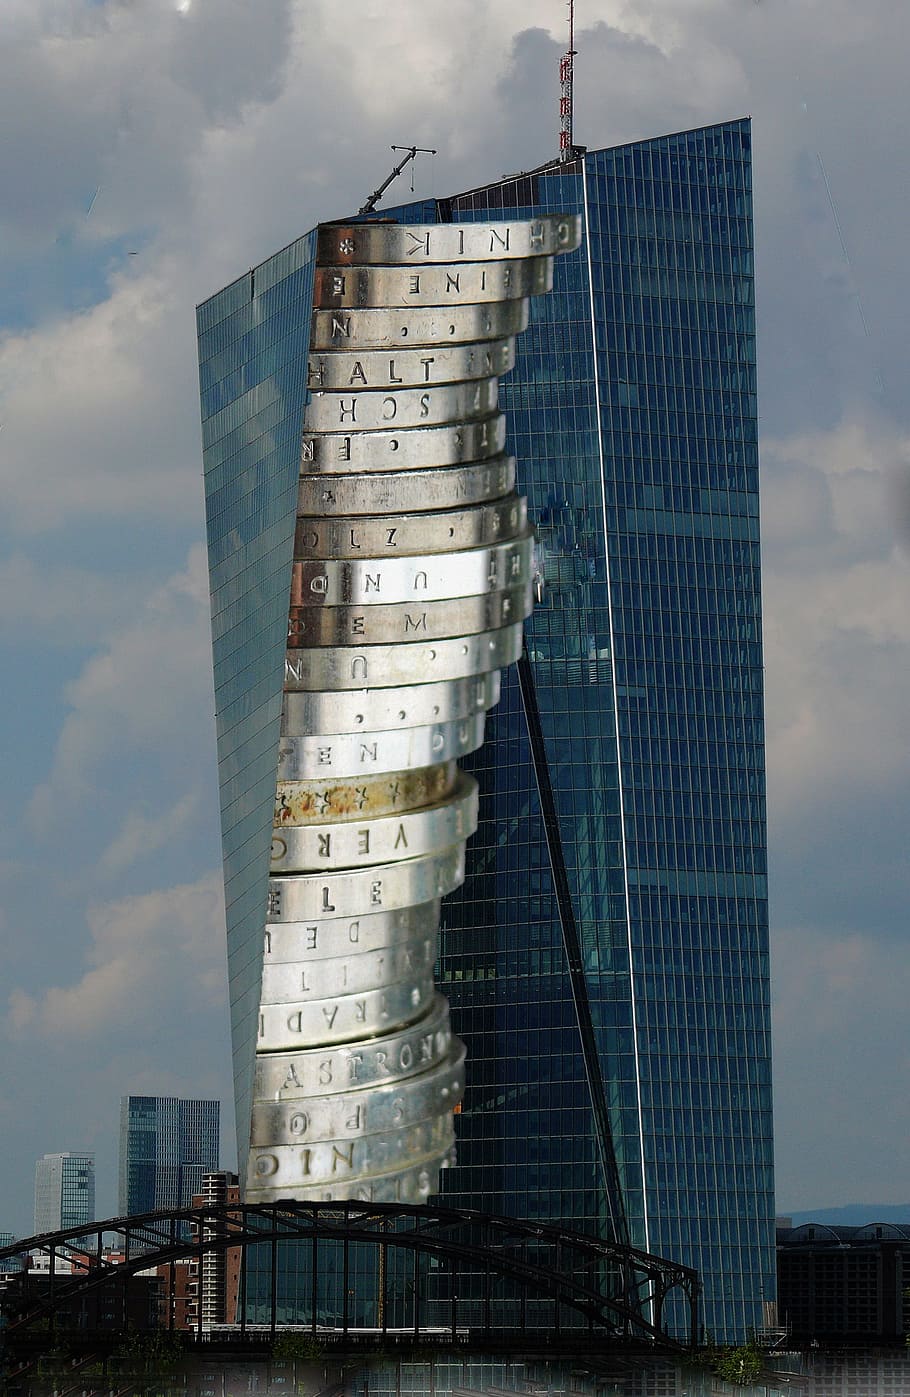 ecb, european central bank, skyscraper, glass facade, building, frankfurt, architecture, facade, sky, glass